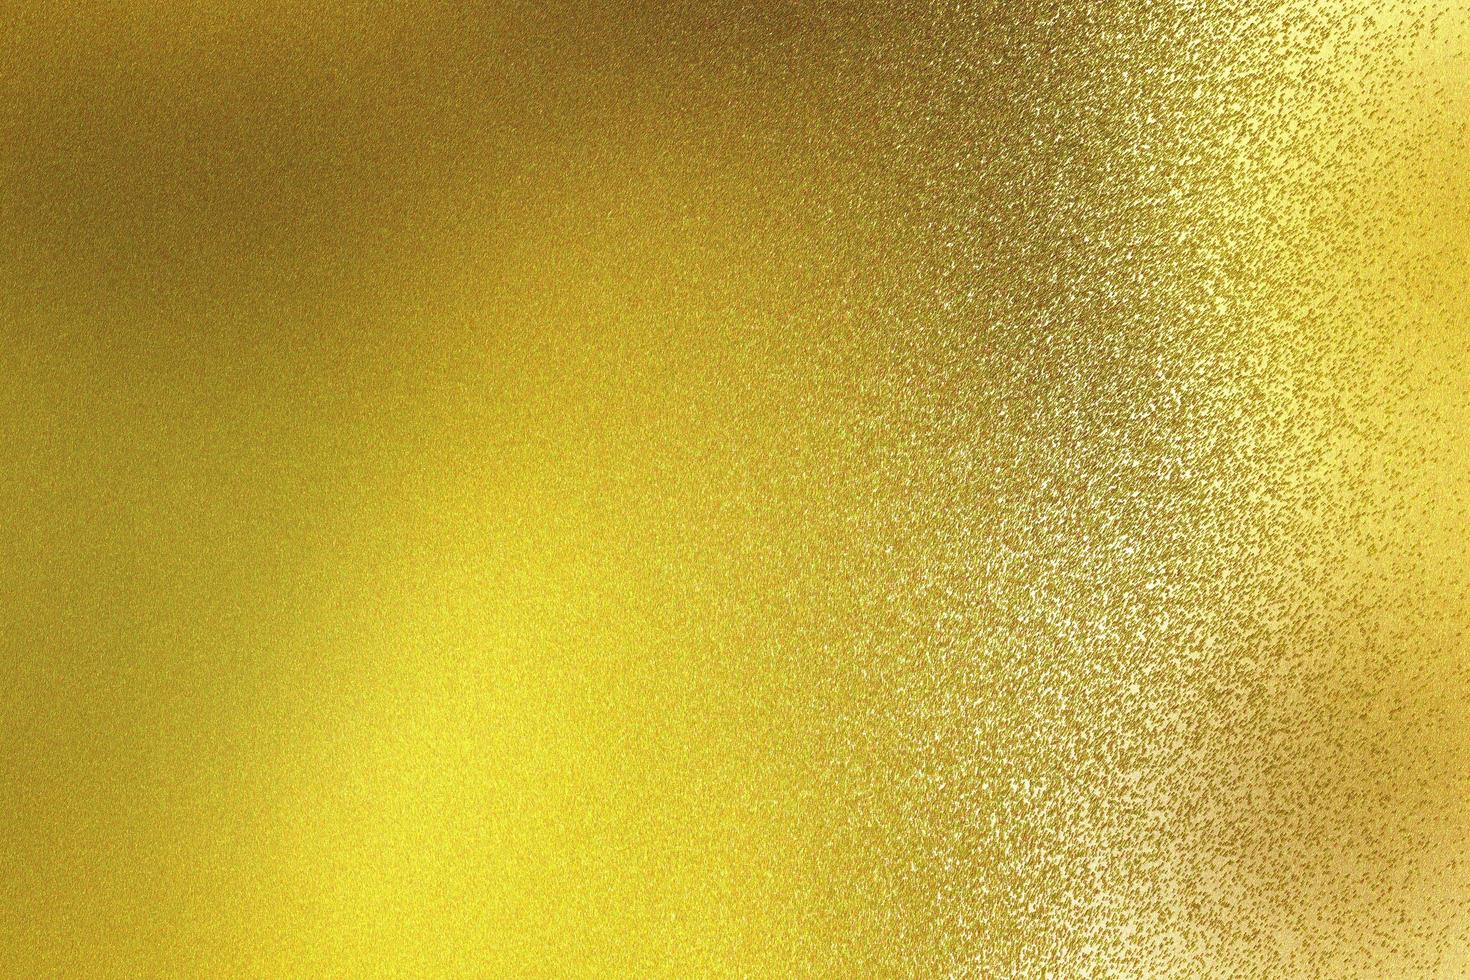 abstracte textuurachtergrond, glanzend op ruwe gouden staalmuur foto